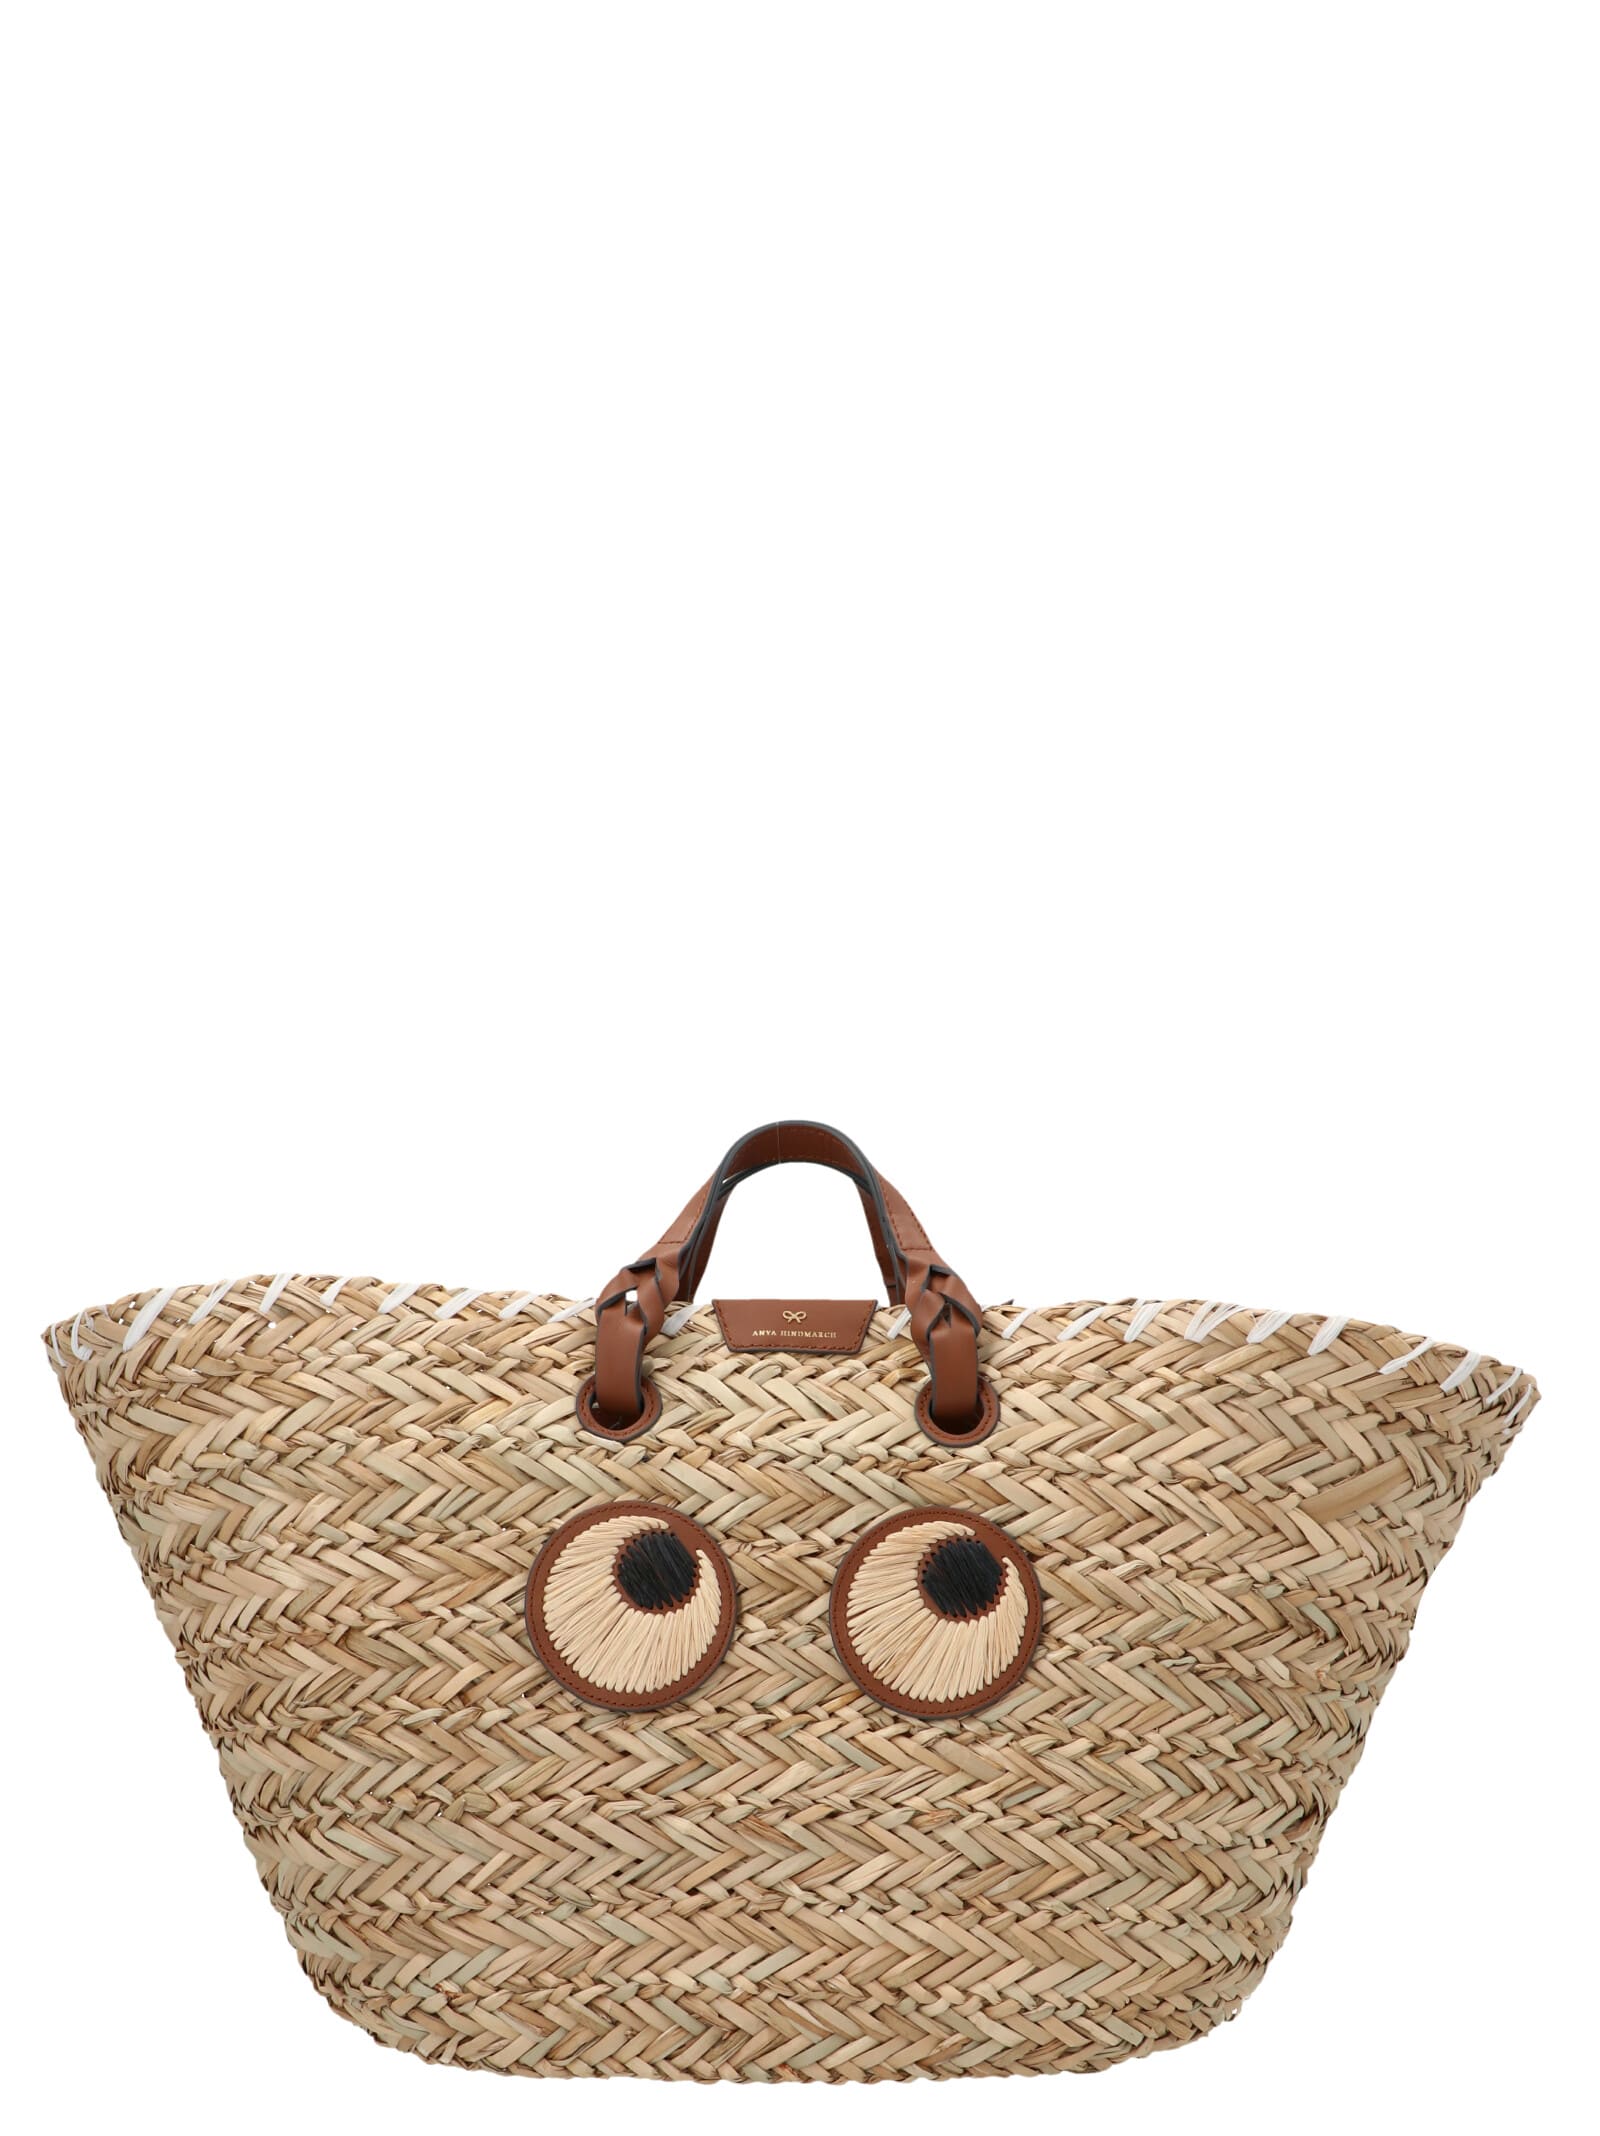 Anya Hindmarch eyes Large Handbag